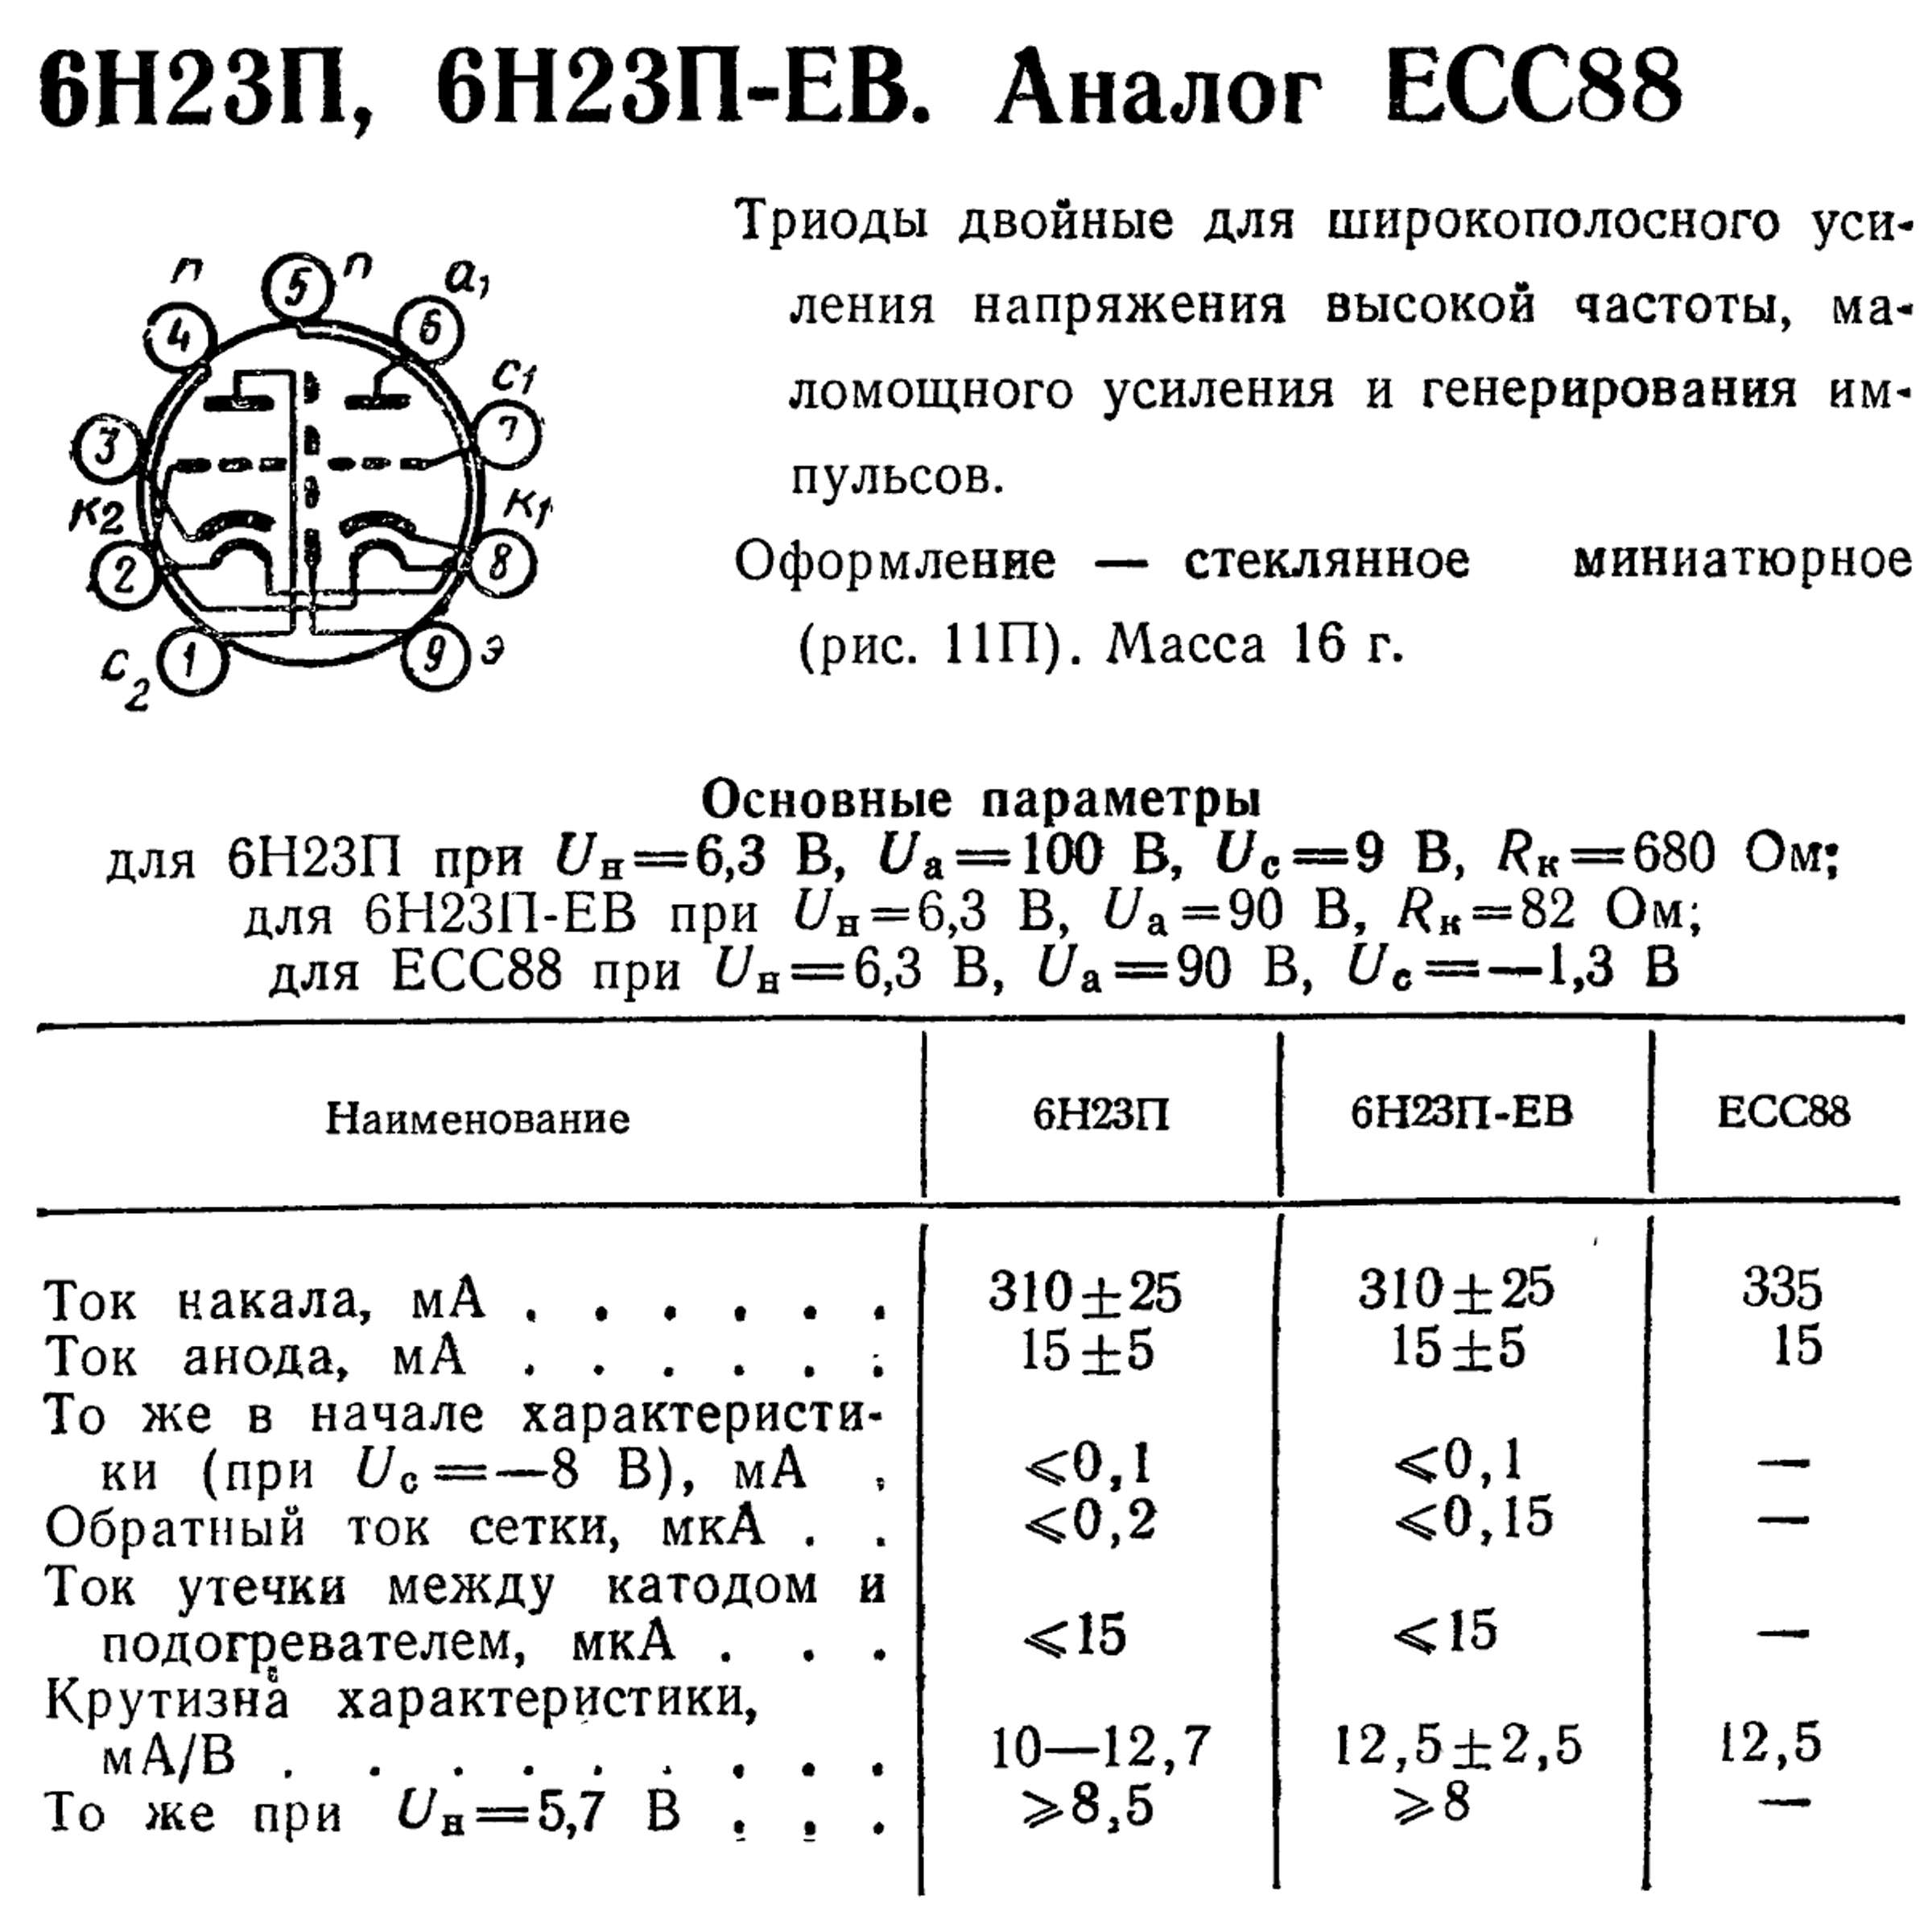 Параметры радиоламп 6Н23П, 6Н23П-ЕВ, ECC88